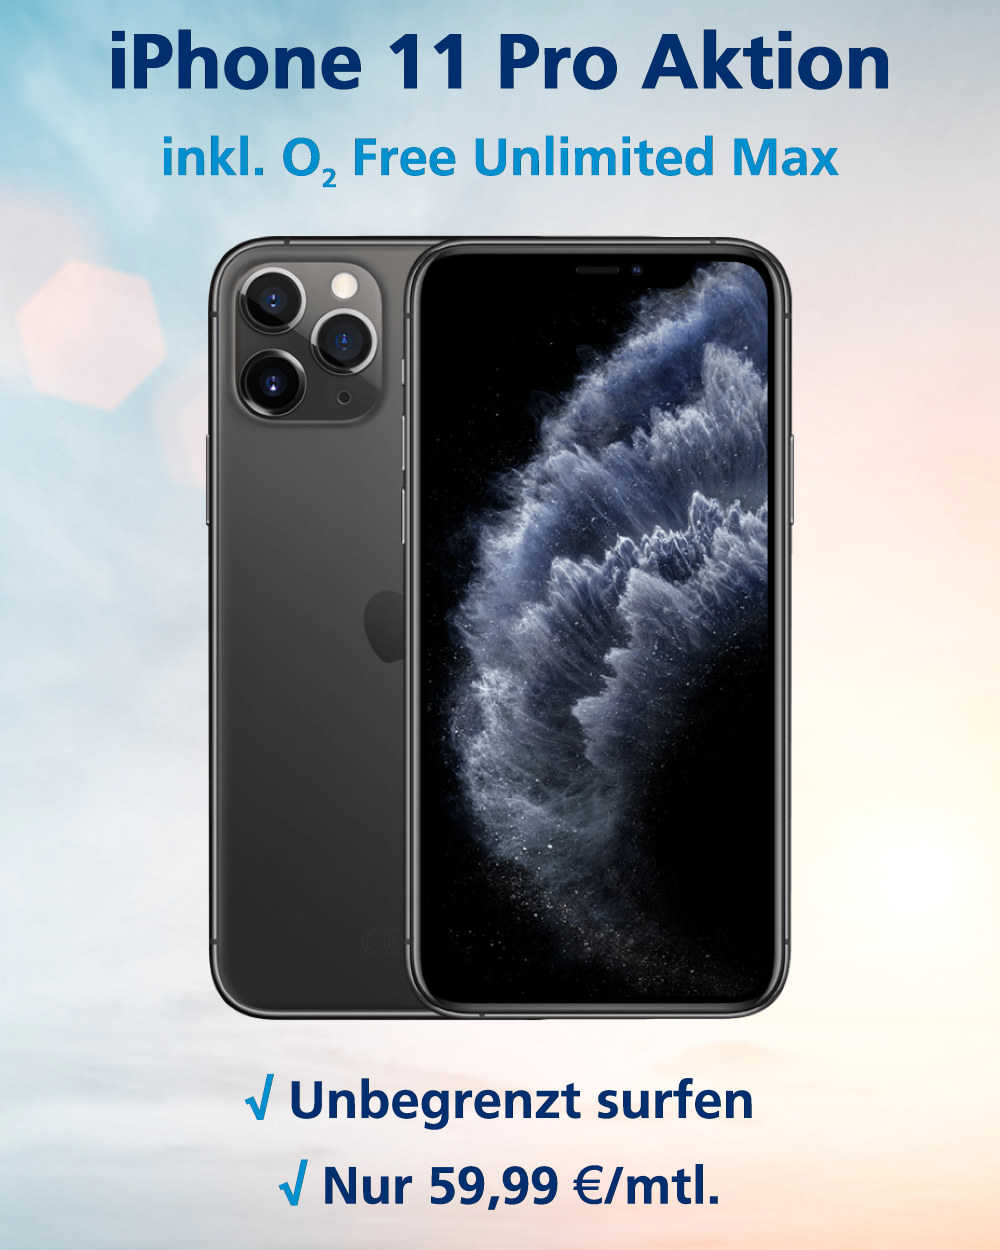 Handy-Tarifvergleich iPhone 11 Pro mit o2 Free Unlimited Max zum absoluten Bestpreis